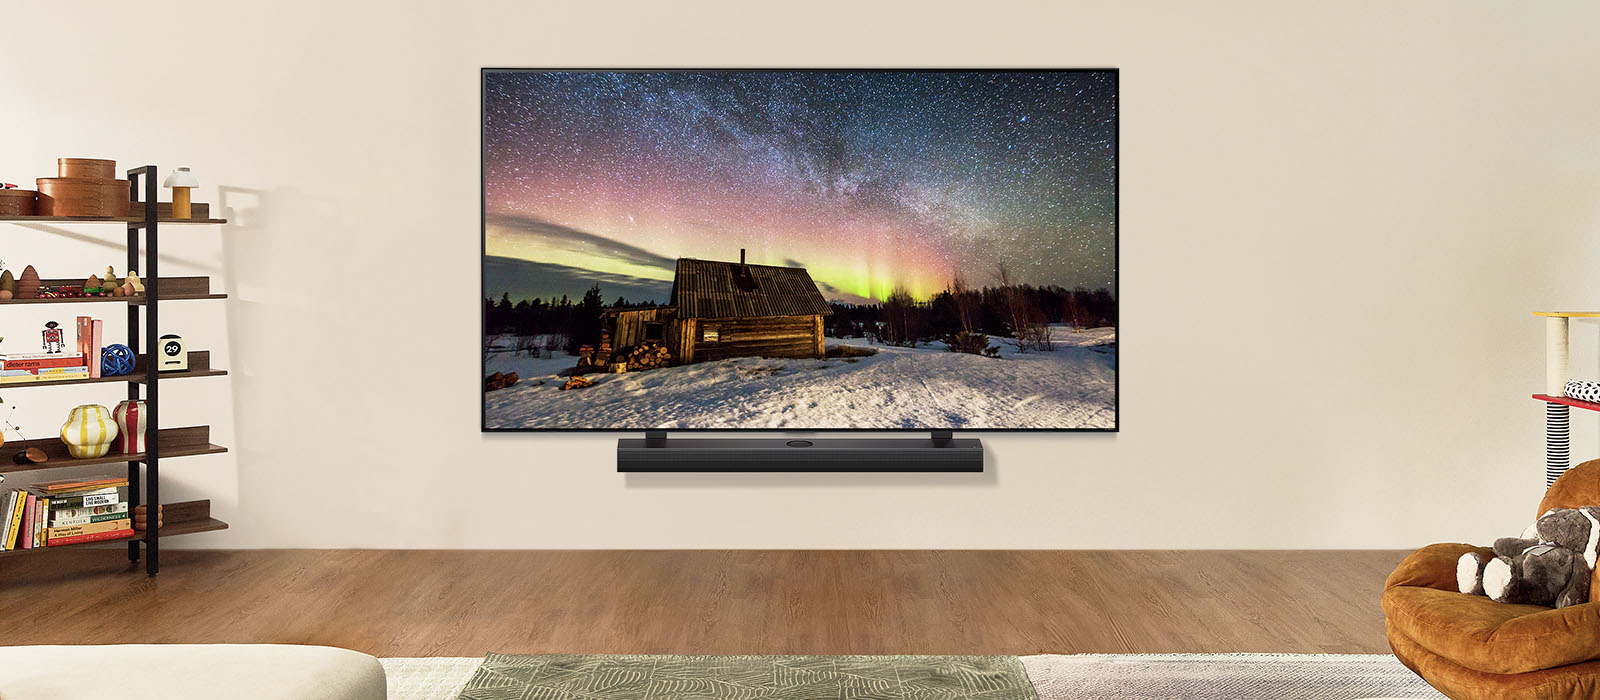 LG TV un LG Soundbar modernā dzīvojamā istabā dienas laikā. Aurora Borealis ekrāna attēls tiek parādīts, pielāgojot piemērotāko spilgtuma līmeni.